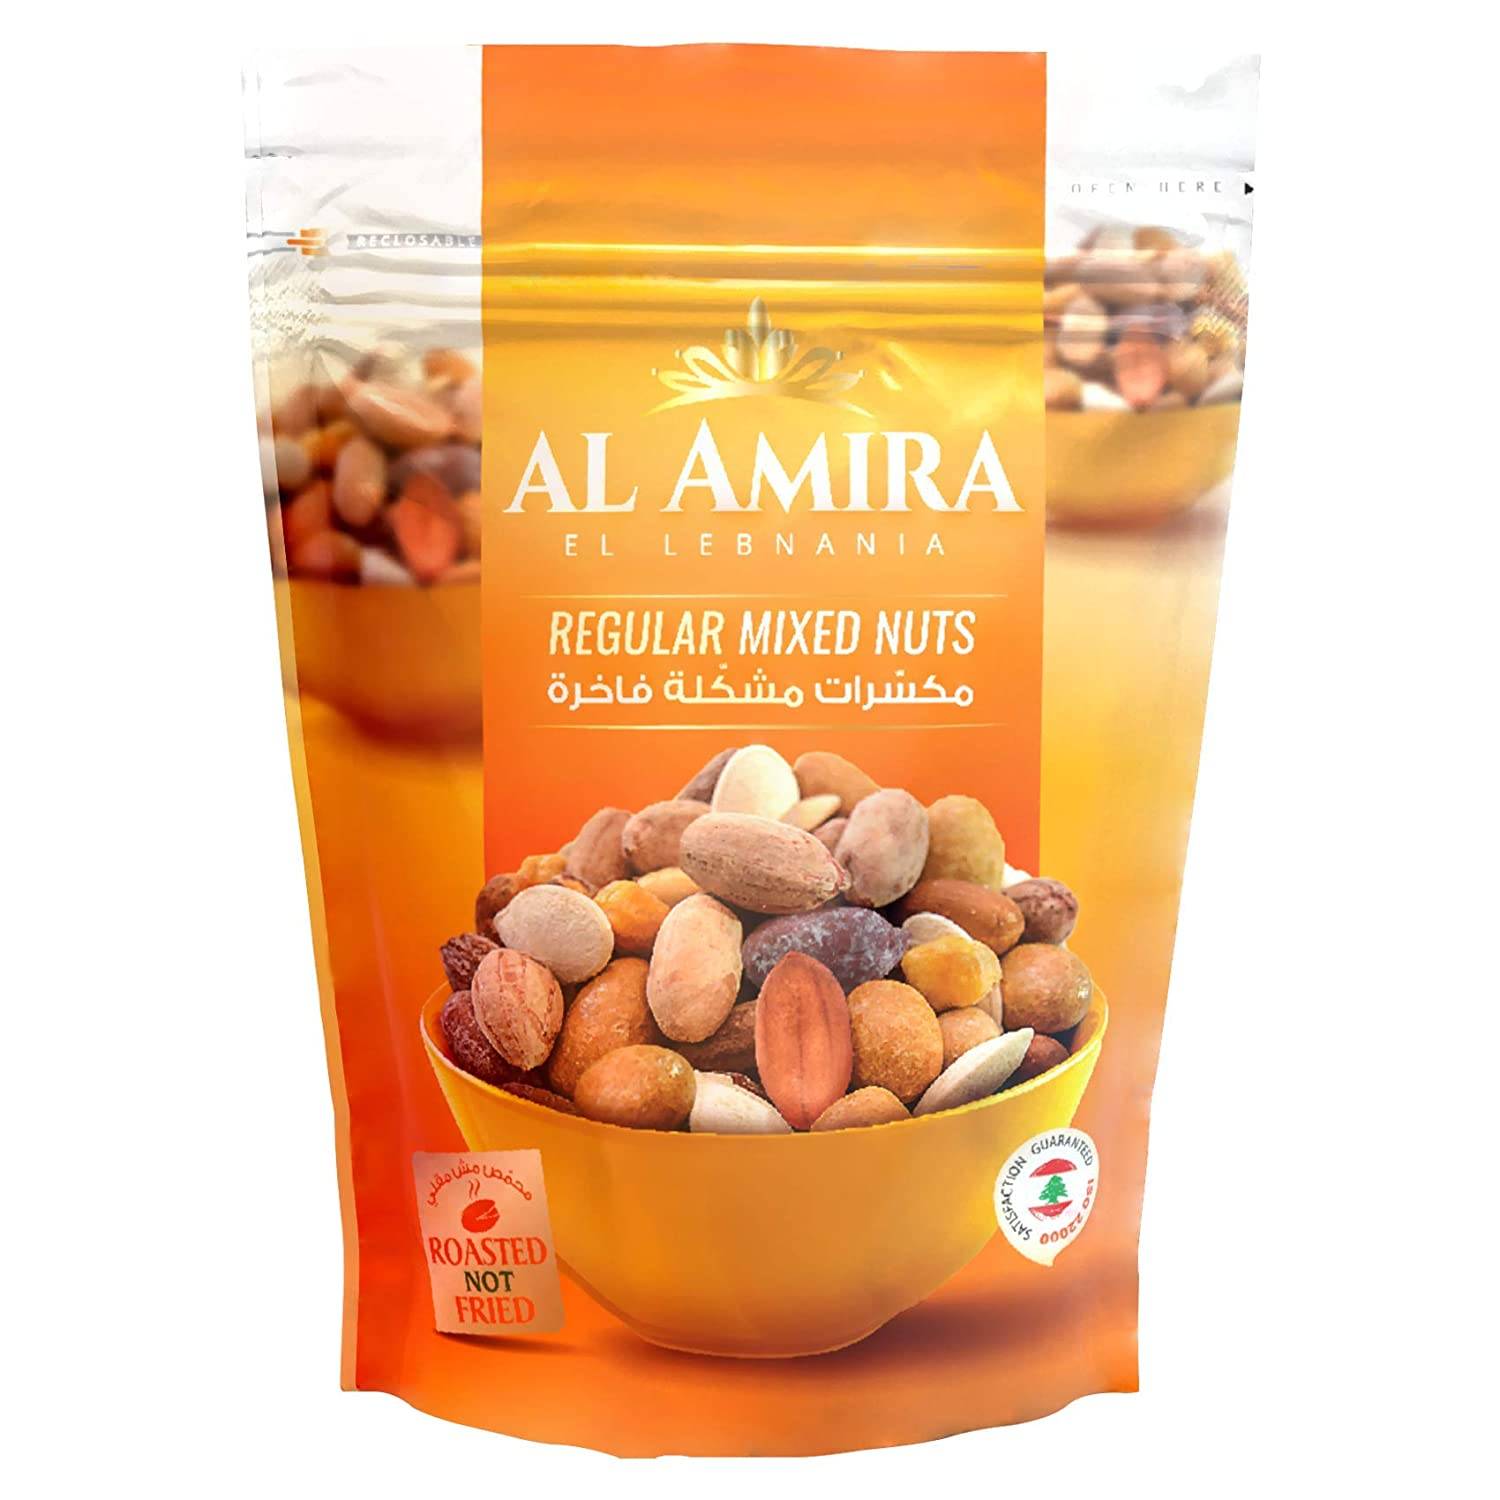 AL AMIRA Regular Mixed Nuts, 300g. 